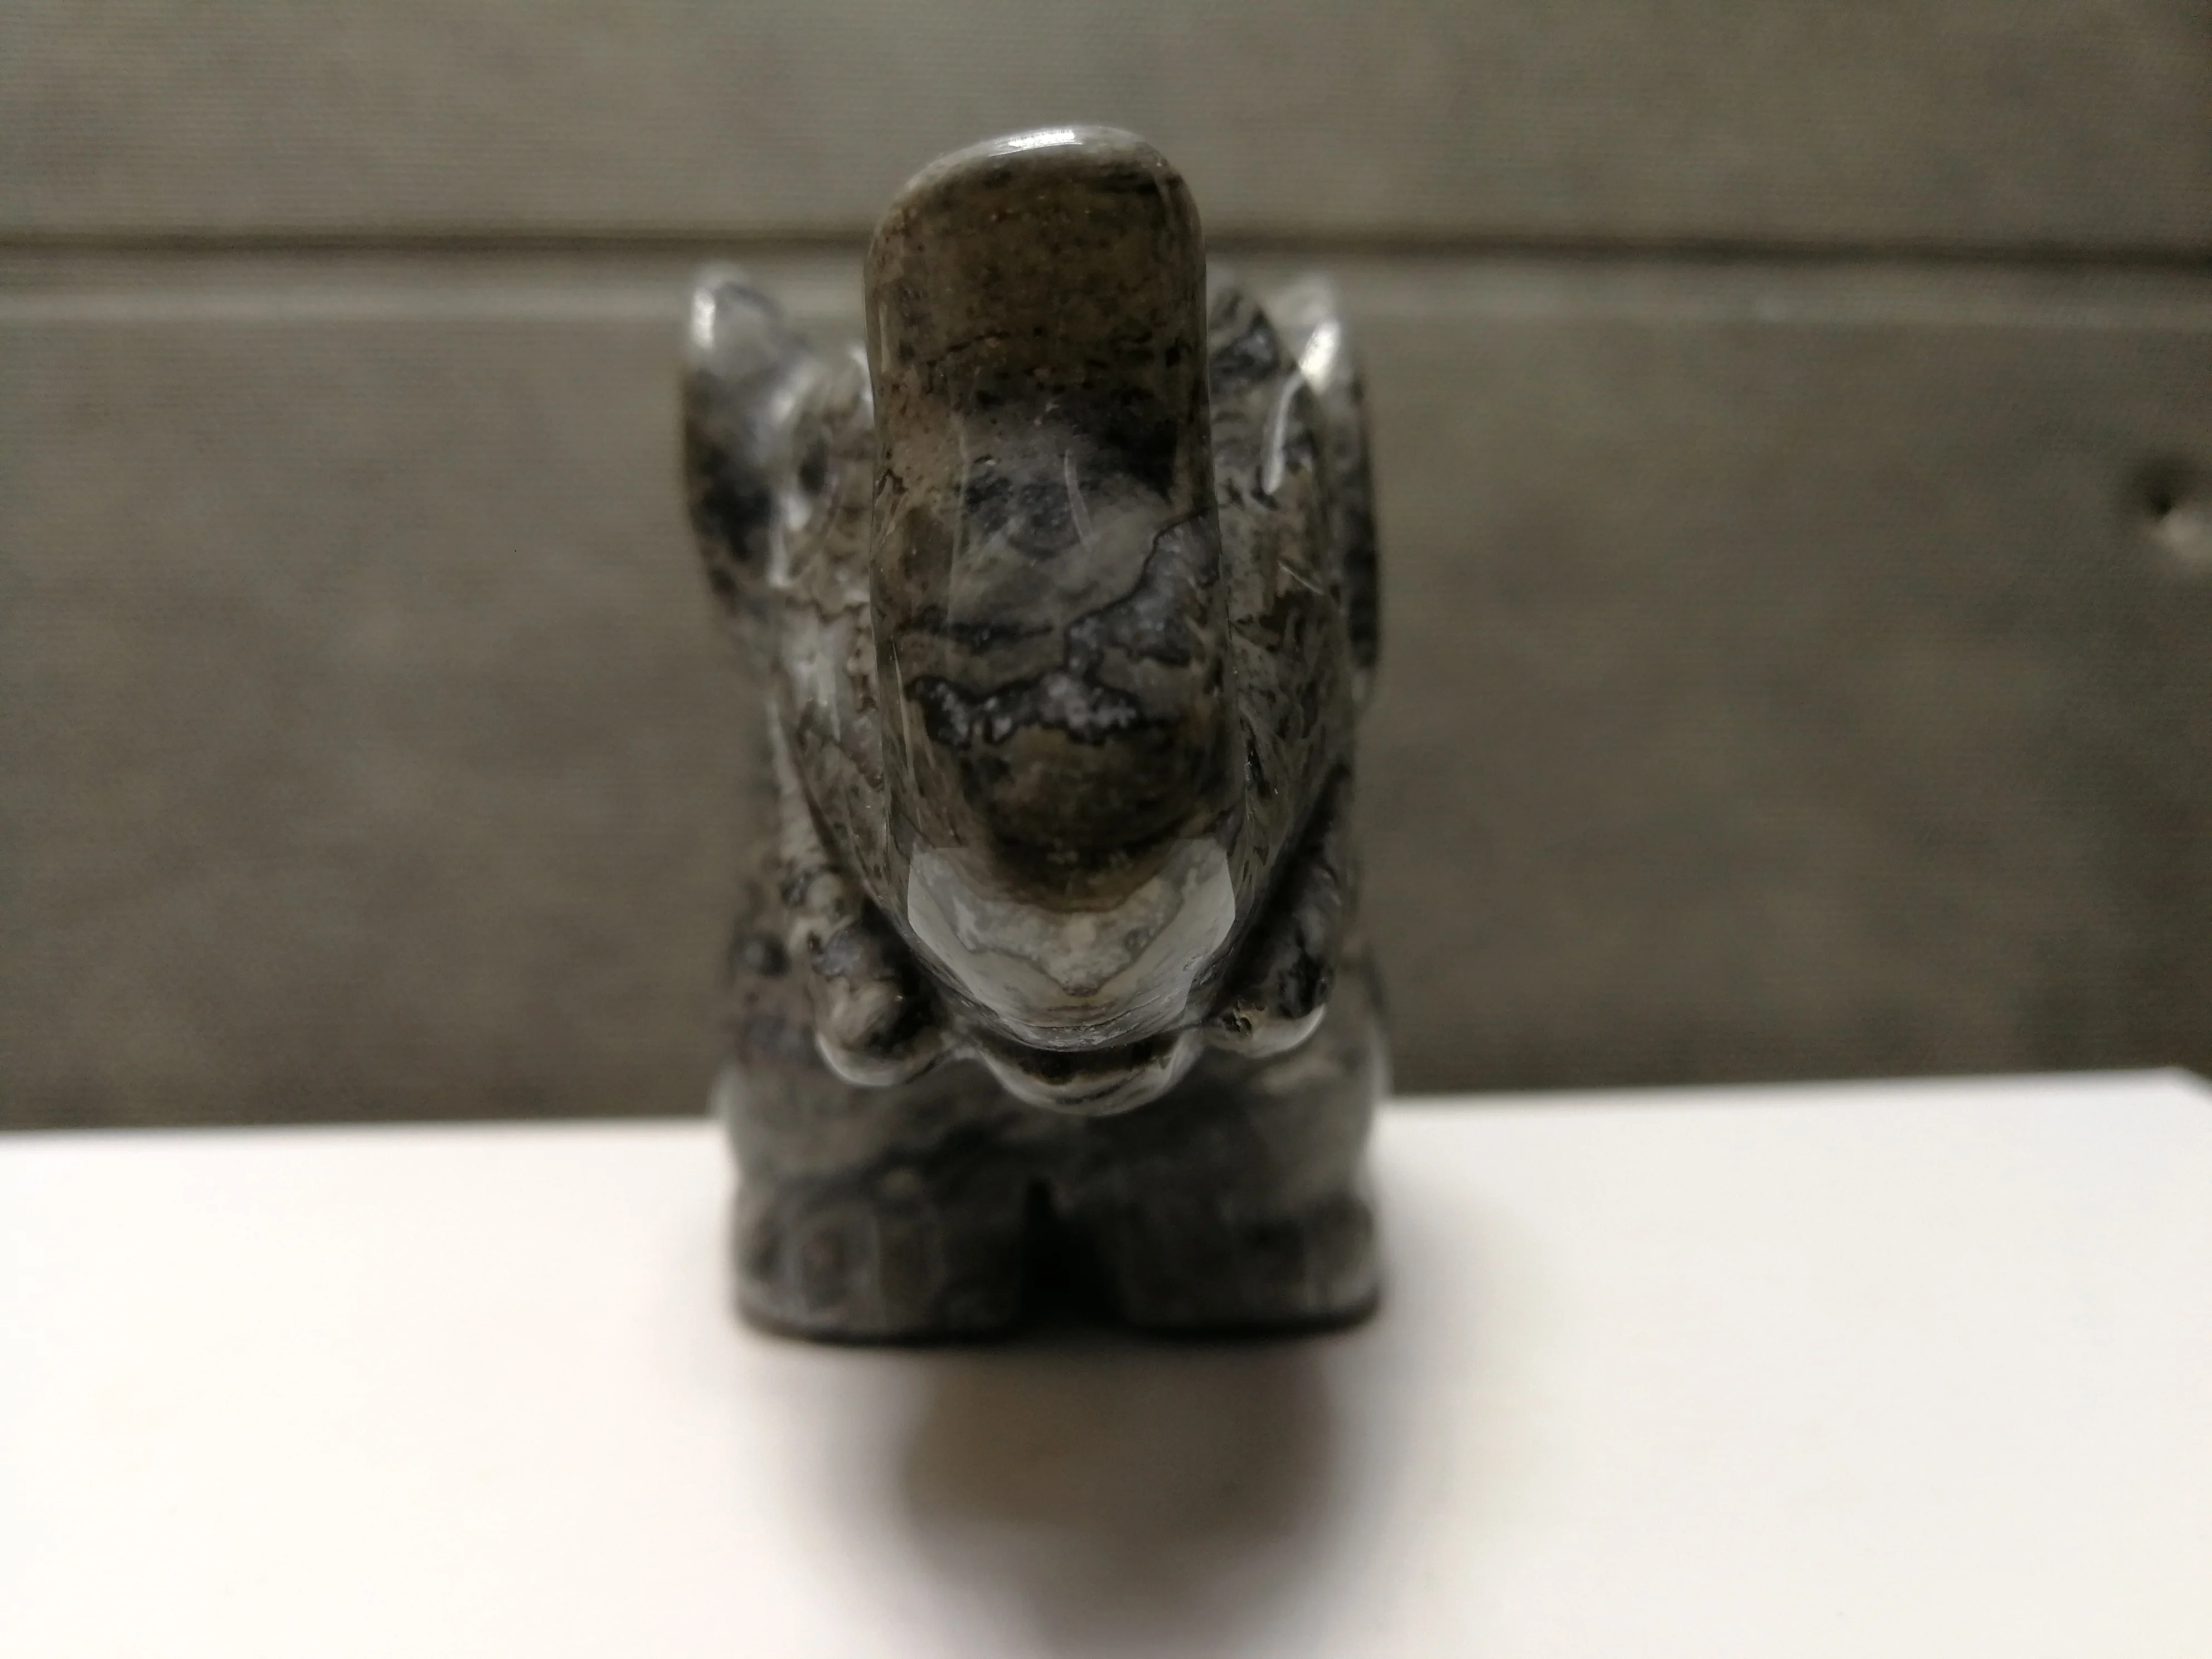 291,4 gNatural серый камень "Зебра", выгравированный вручную слонов, исцеление --- 06 от AliExpress WW